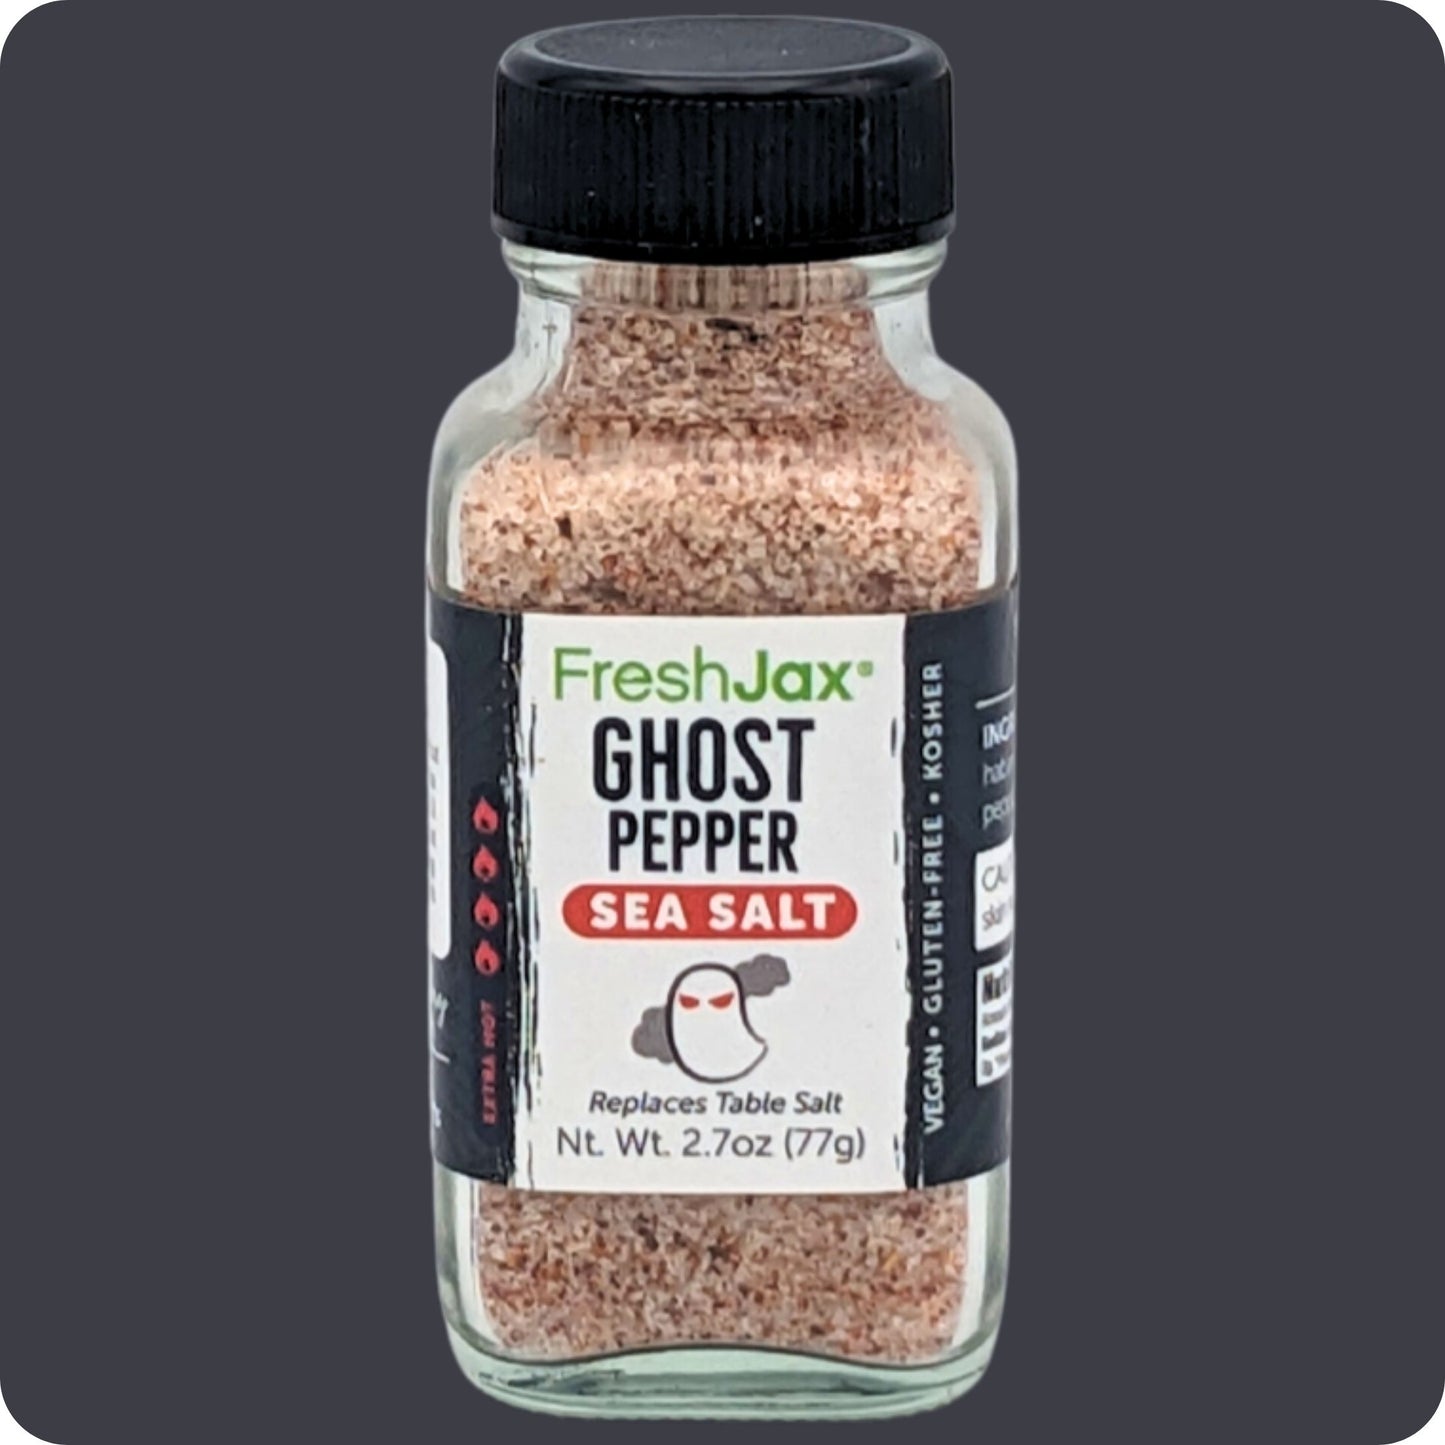 Sampler Sized Ghost Pepper Sea Salt